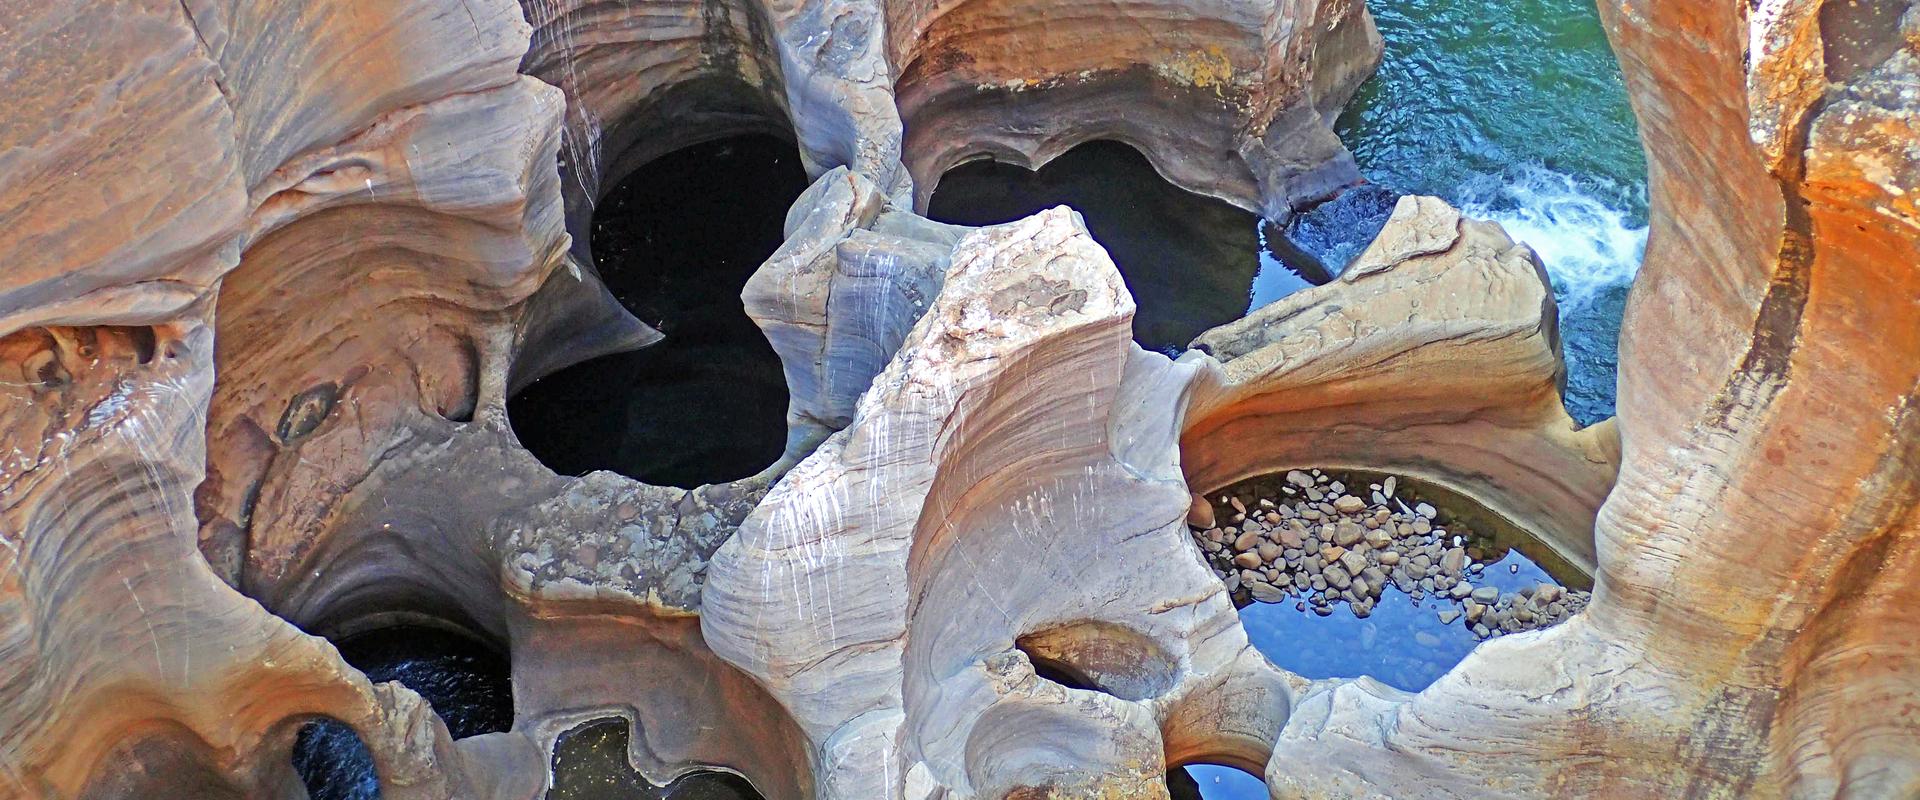 Marmites de géant de Bourke's Luck, Afrique du Sud